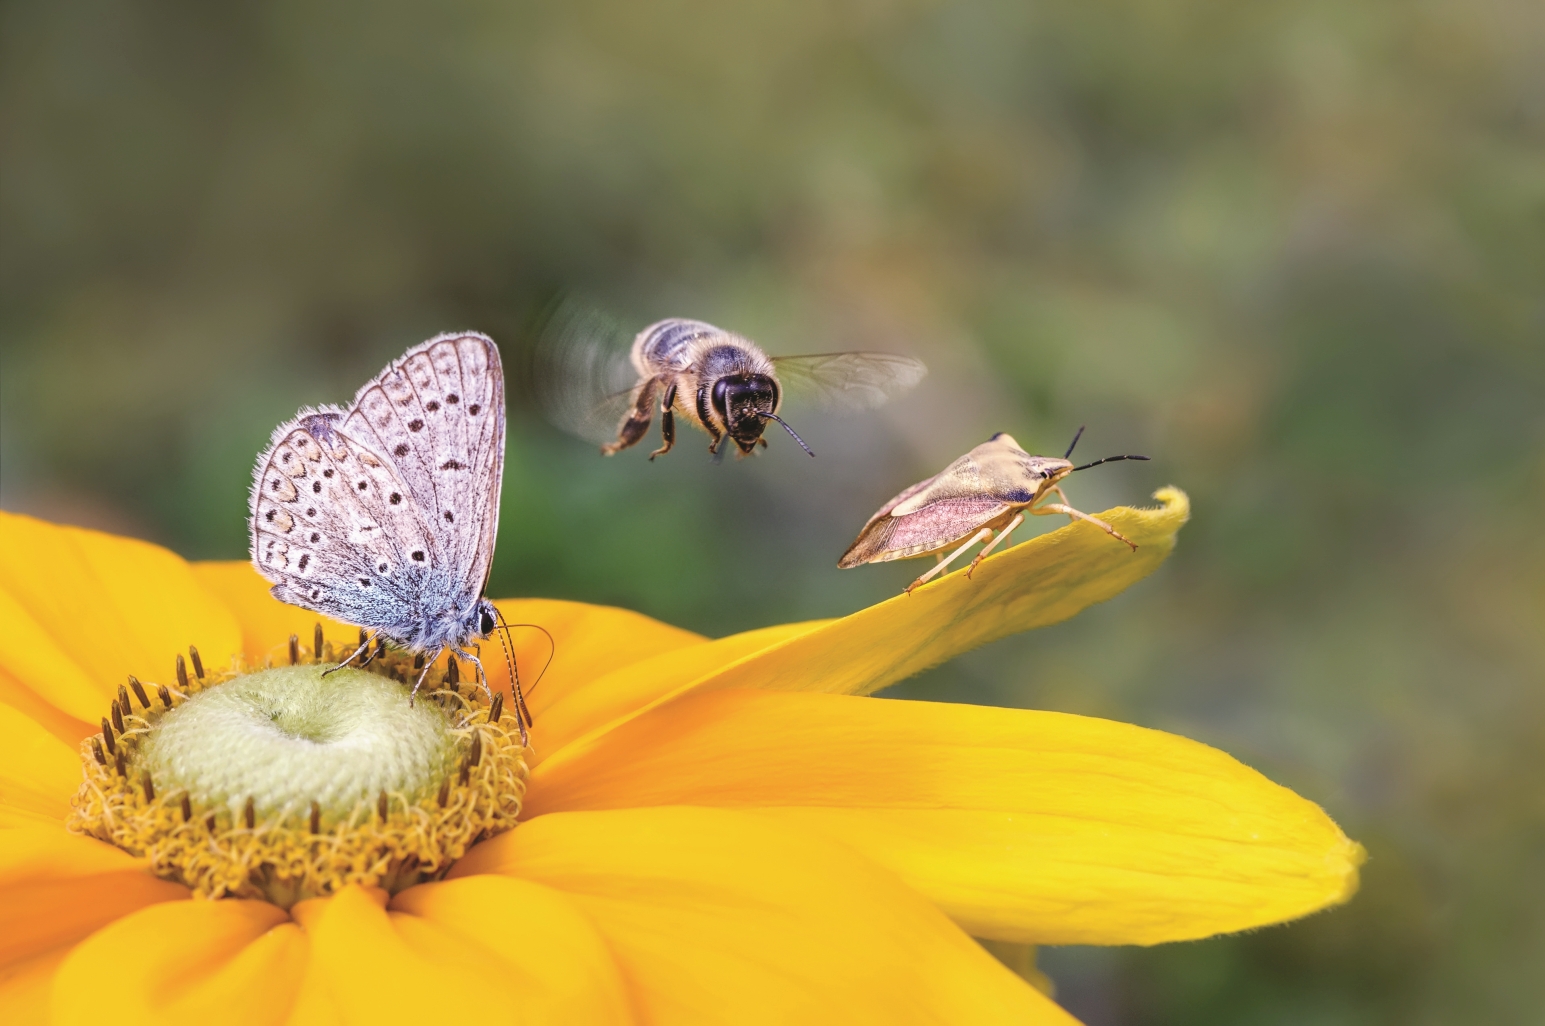 Das Bild zeigt in Nahaufnahme eine gelbe Blüte, auf der ein Schmetterling (Bläuling) und eine Wanze sitzen. Eine Biene ist gerade im Anflug.